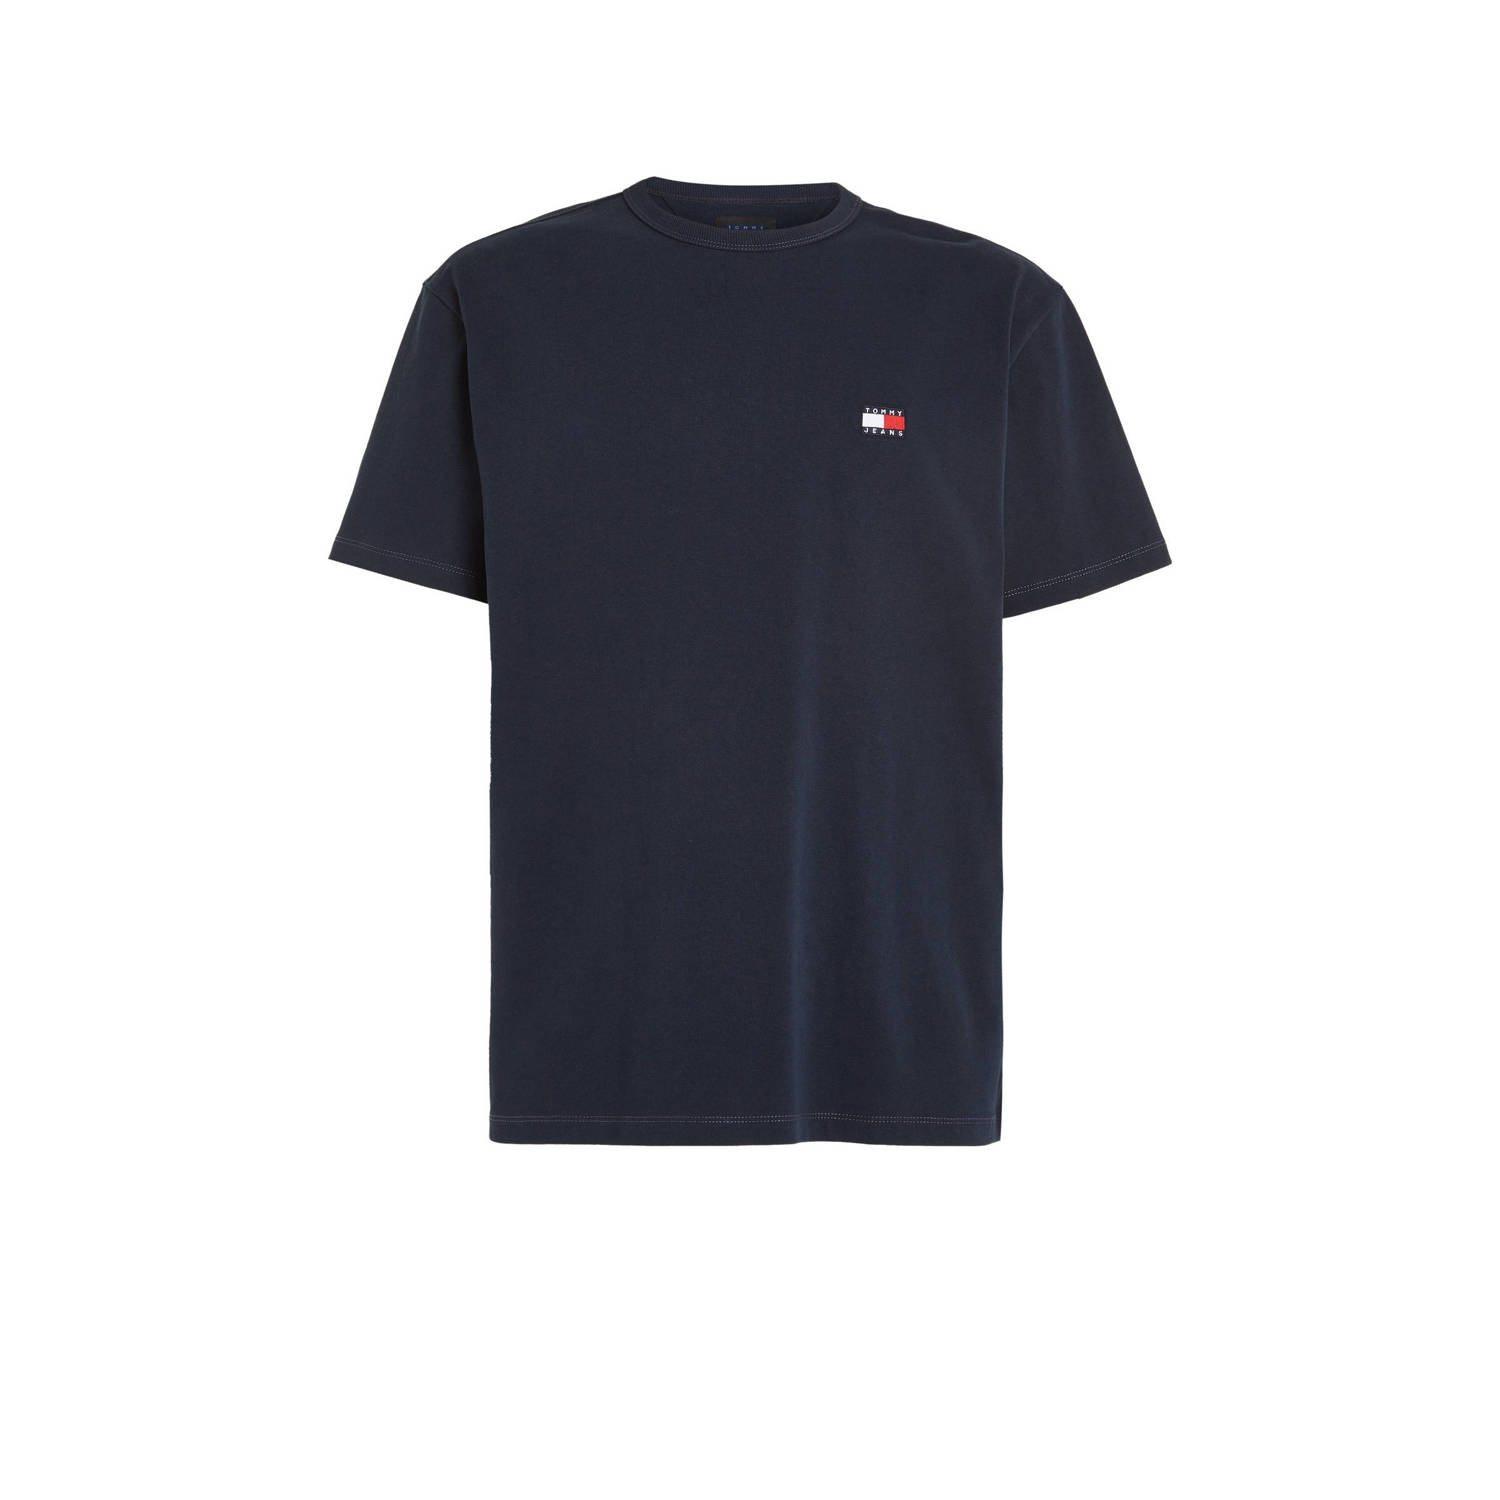 Tommy Jeans regular fit T-shirt met logo dark night navy